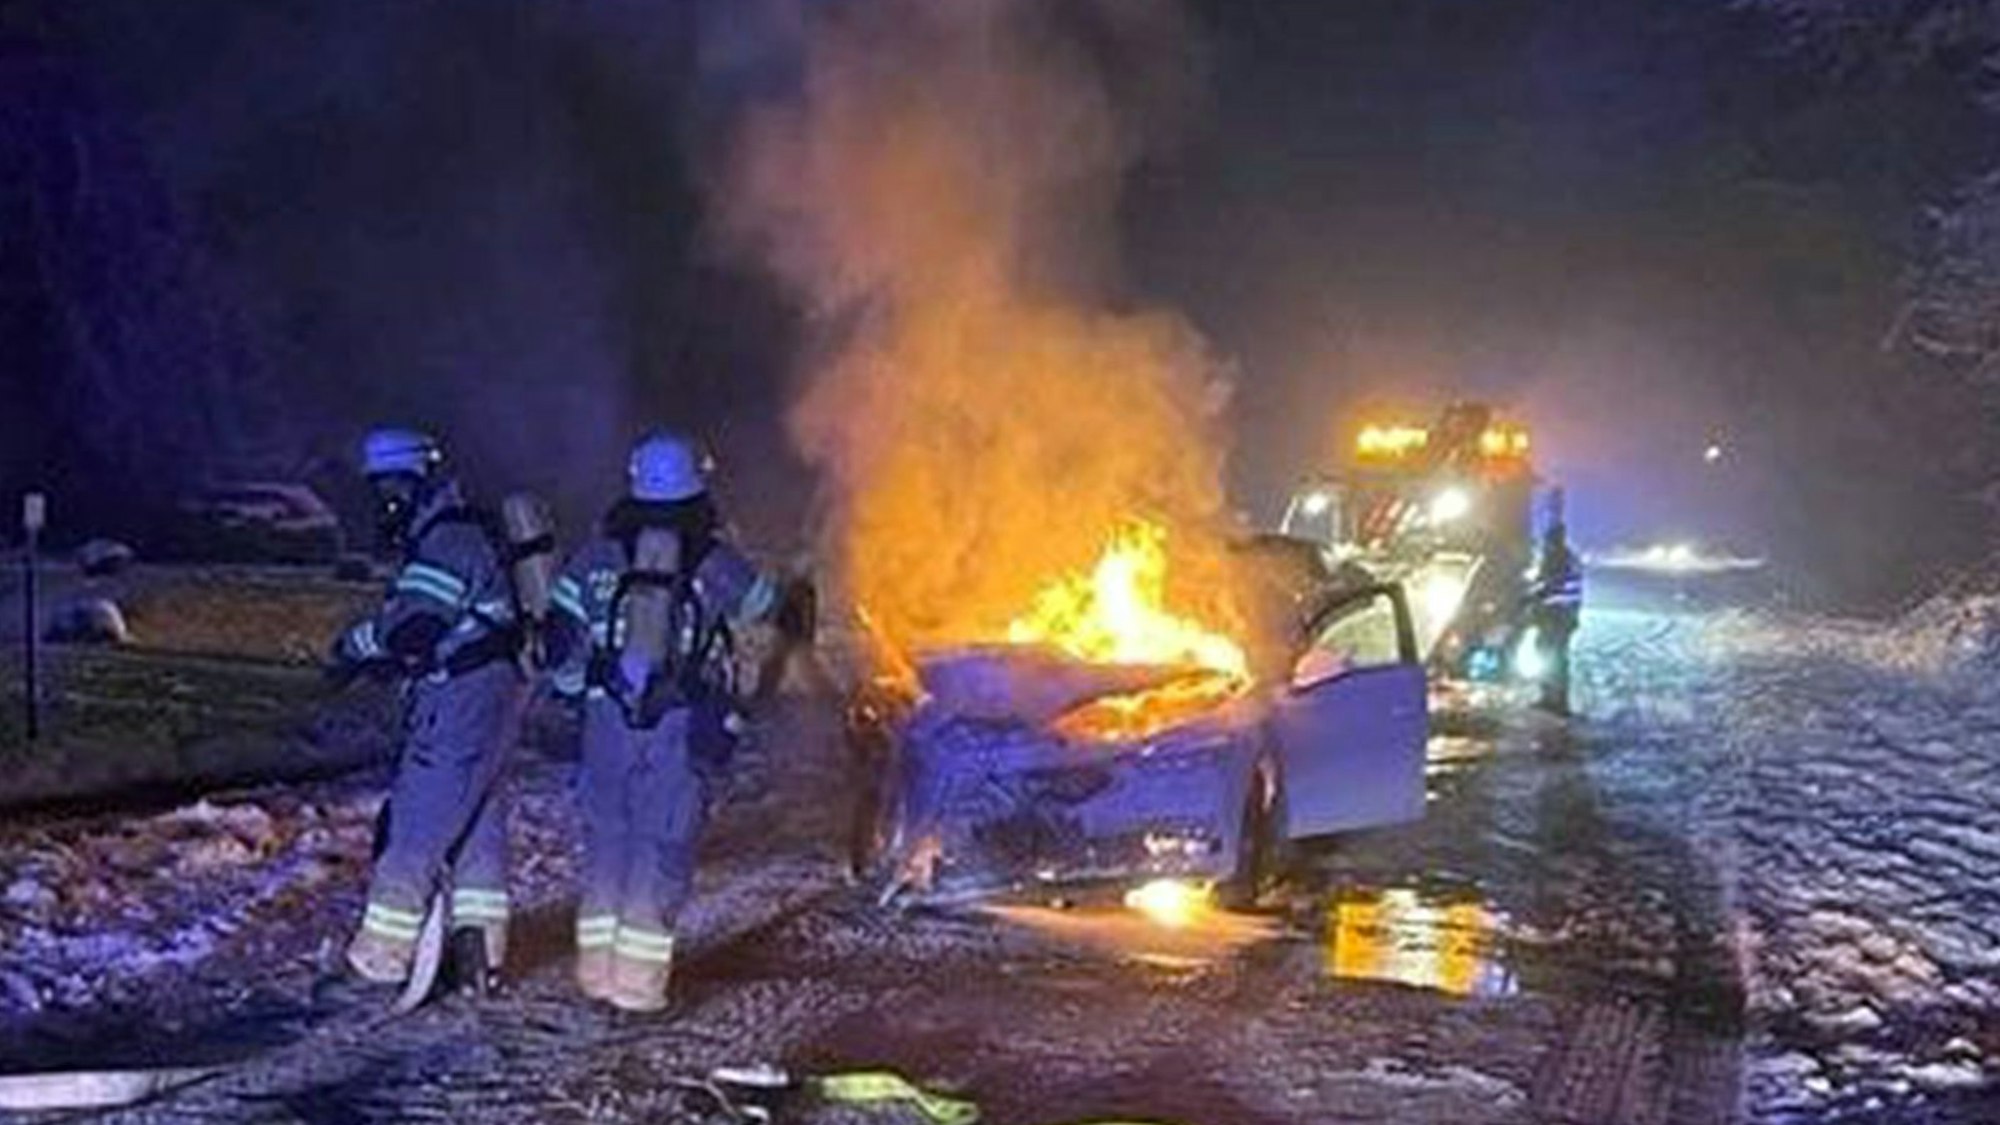 Feuerwehrleute löschen ein brennendes Auto auf einer schneebedeckten Straße.